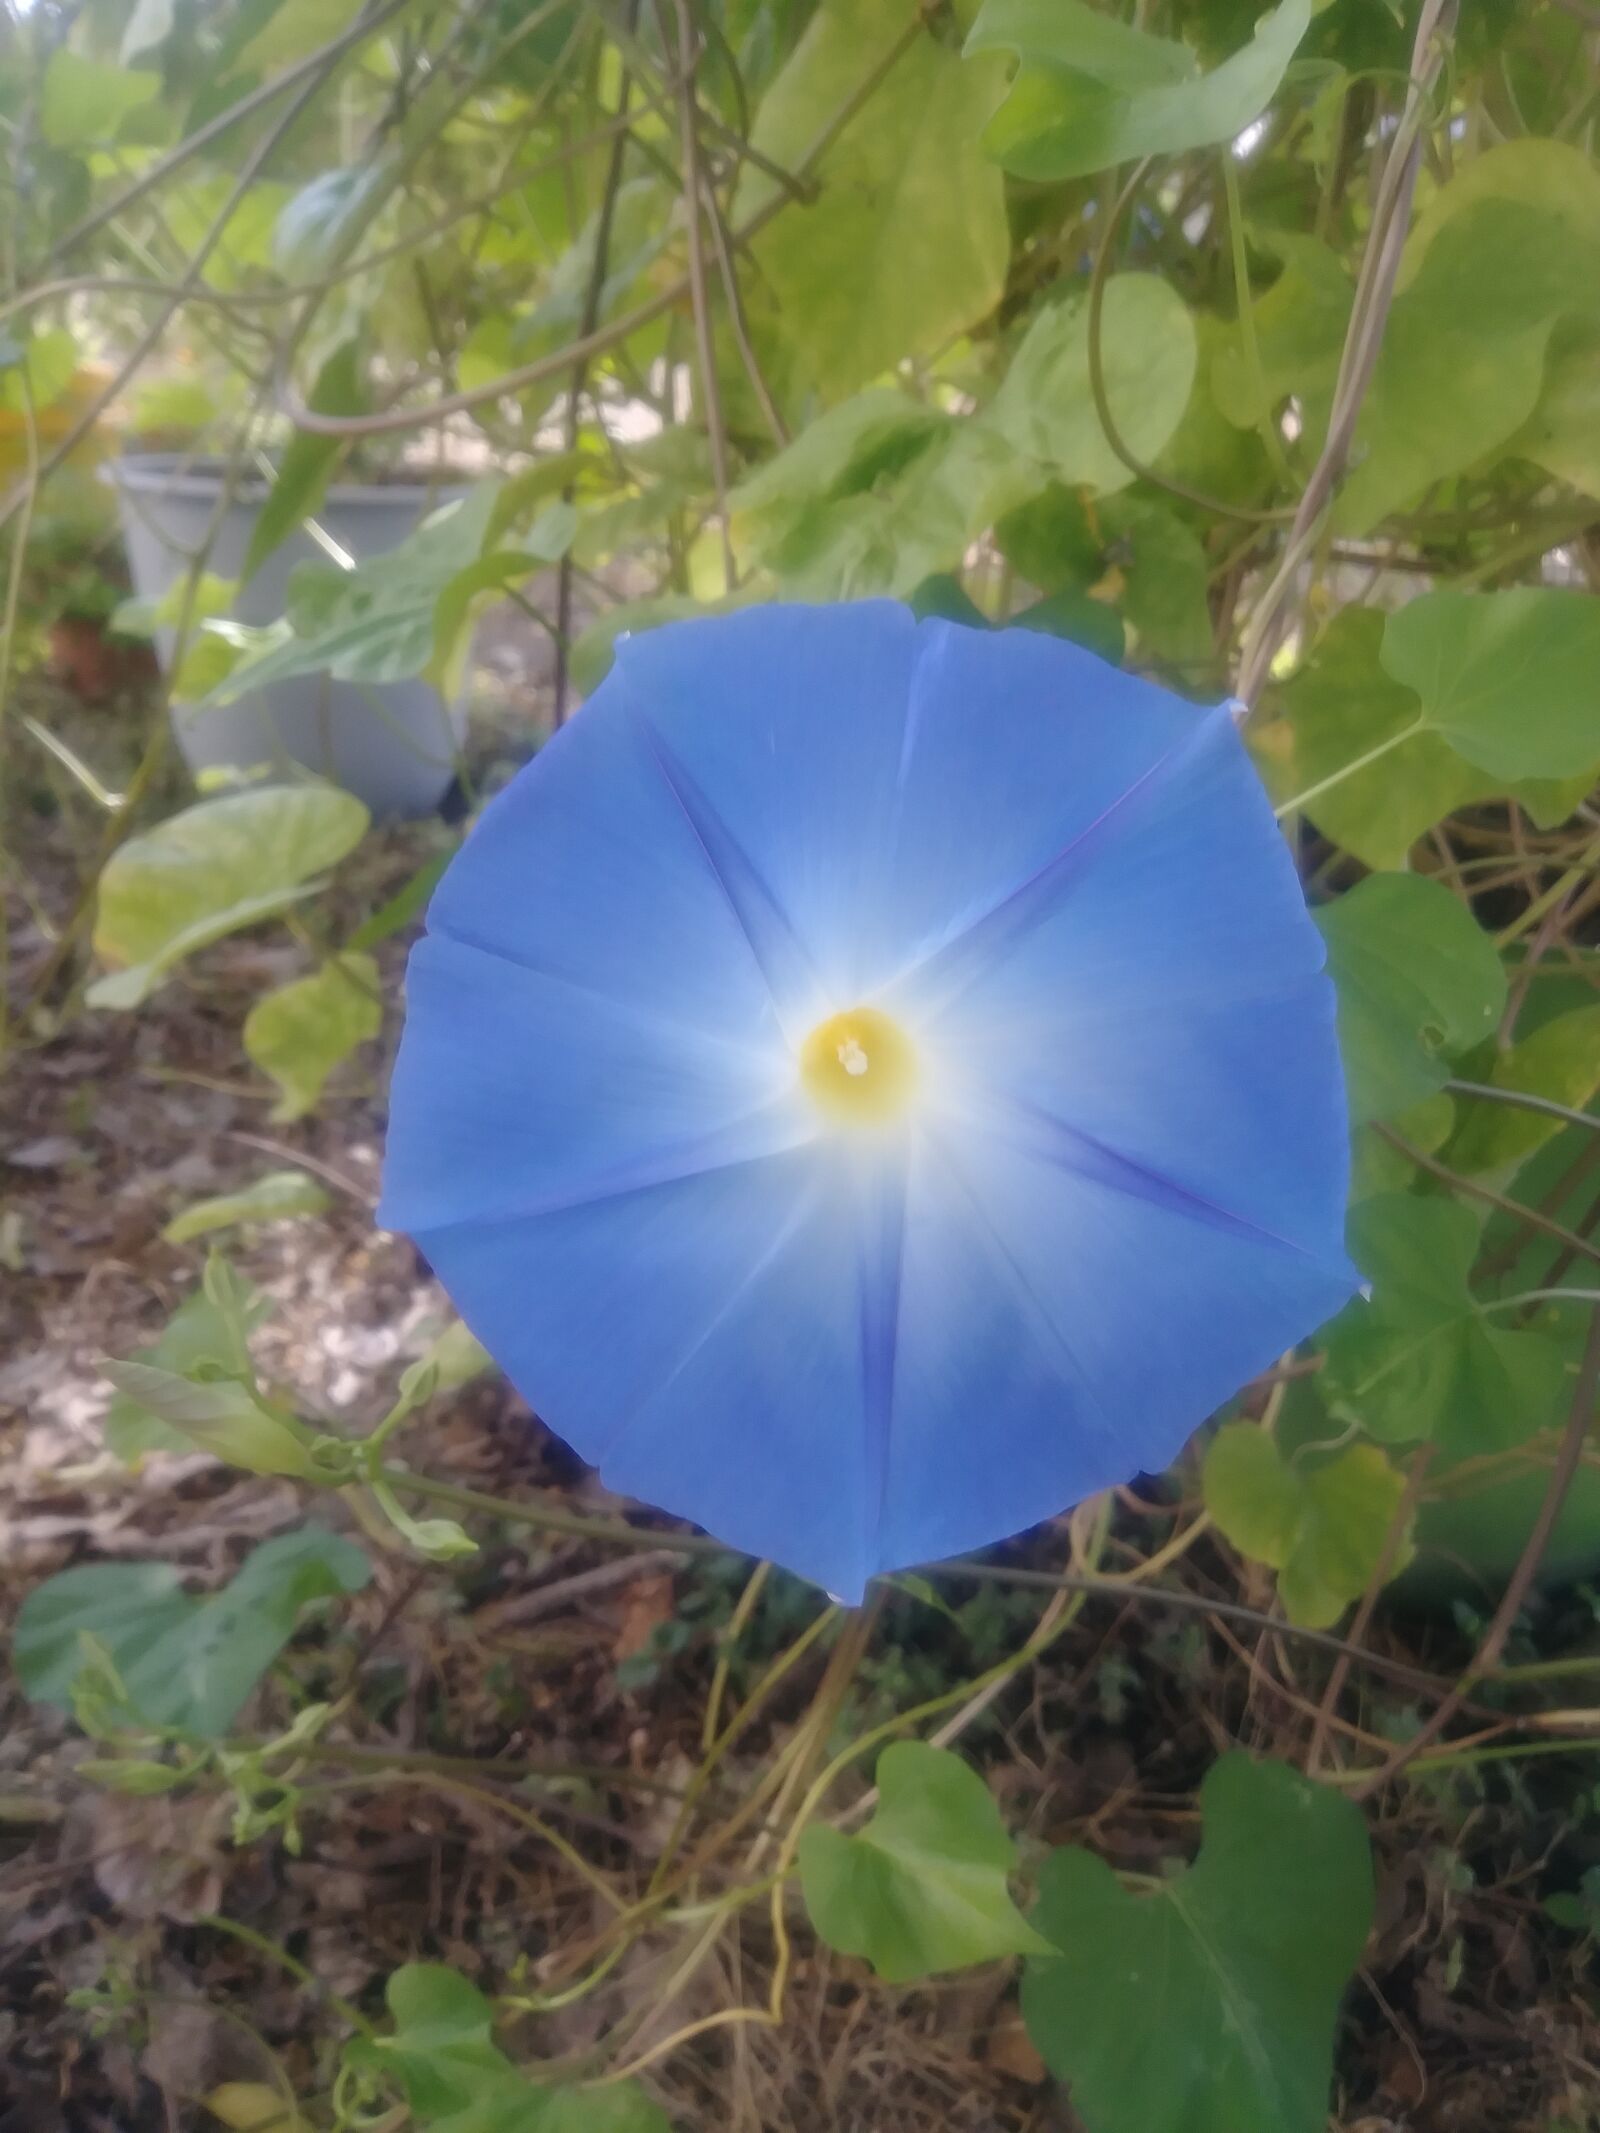 LG STYLO 3 PLUS sample photo. Blue morning glory, flower photography